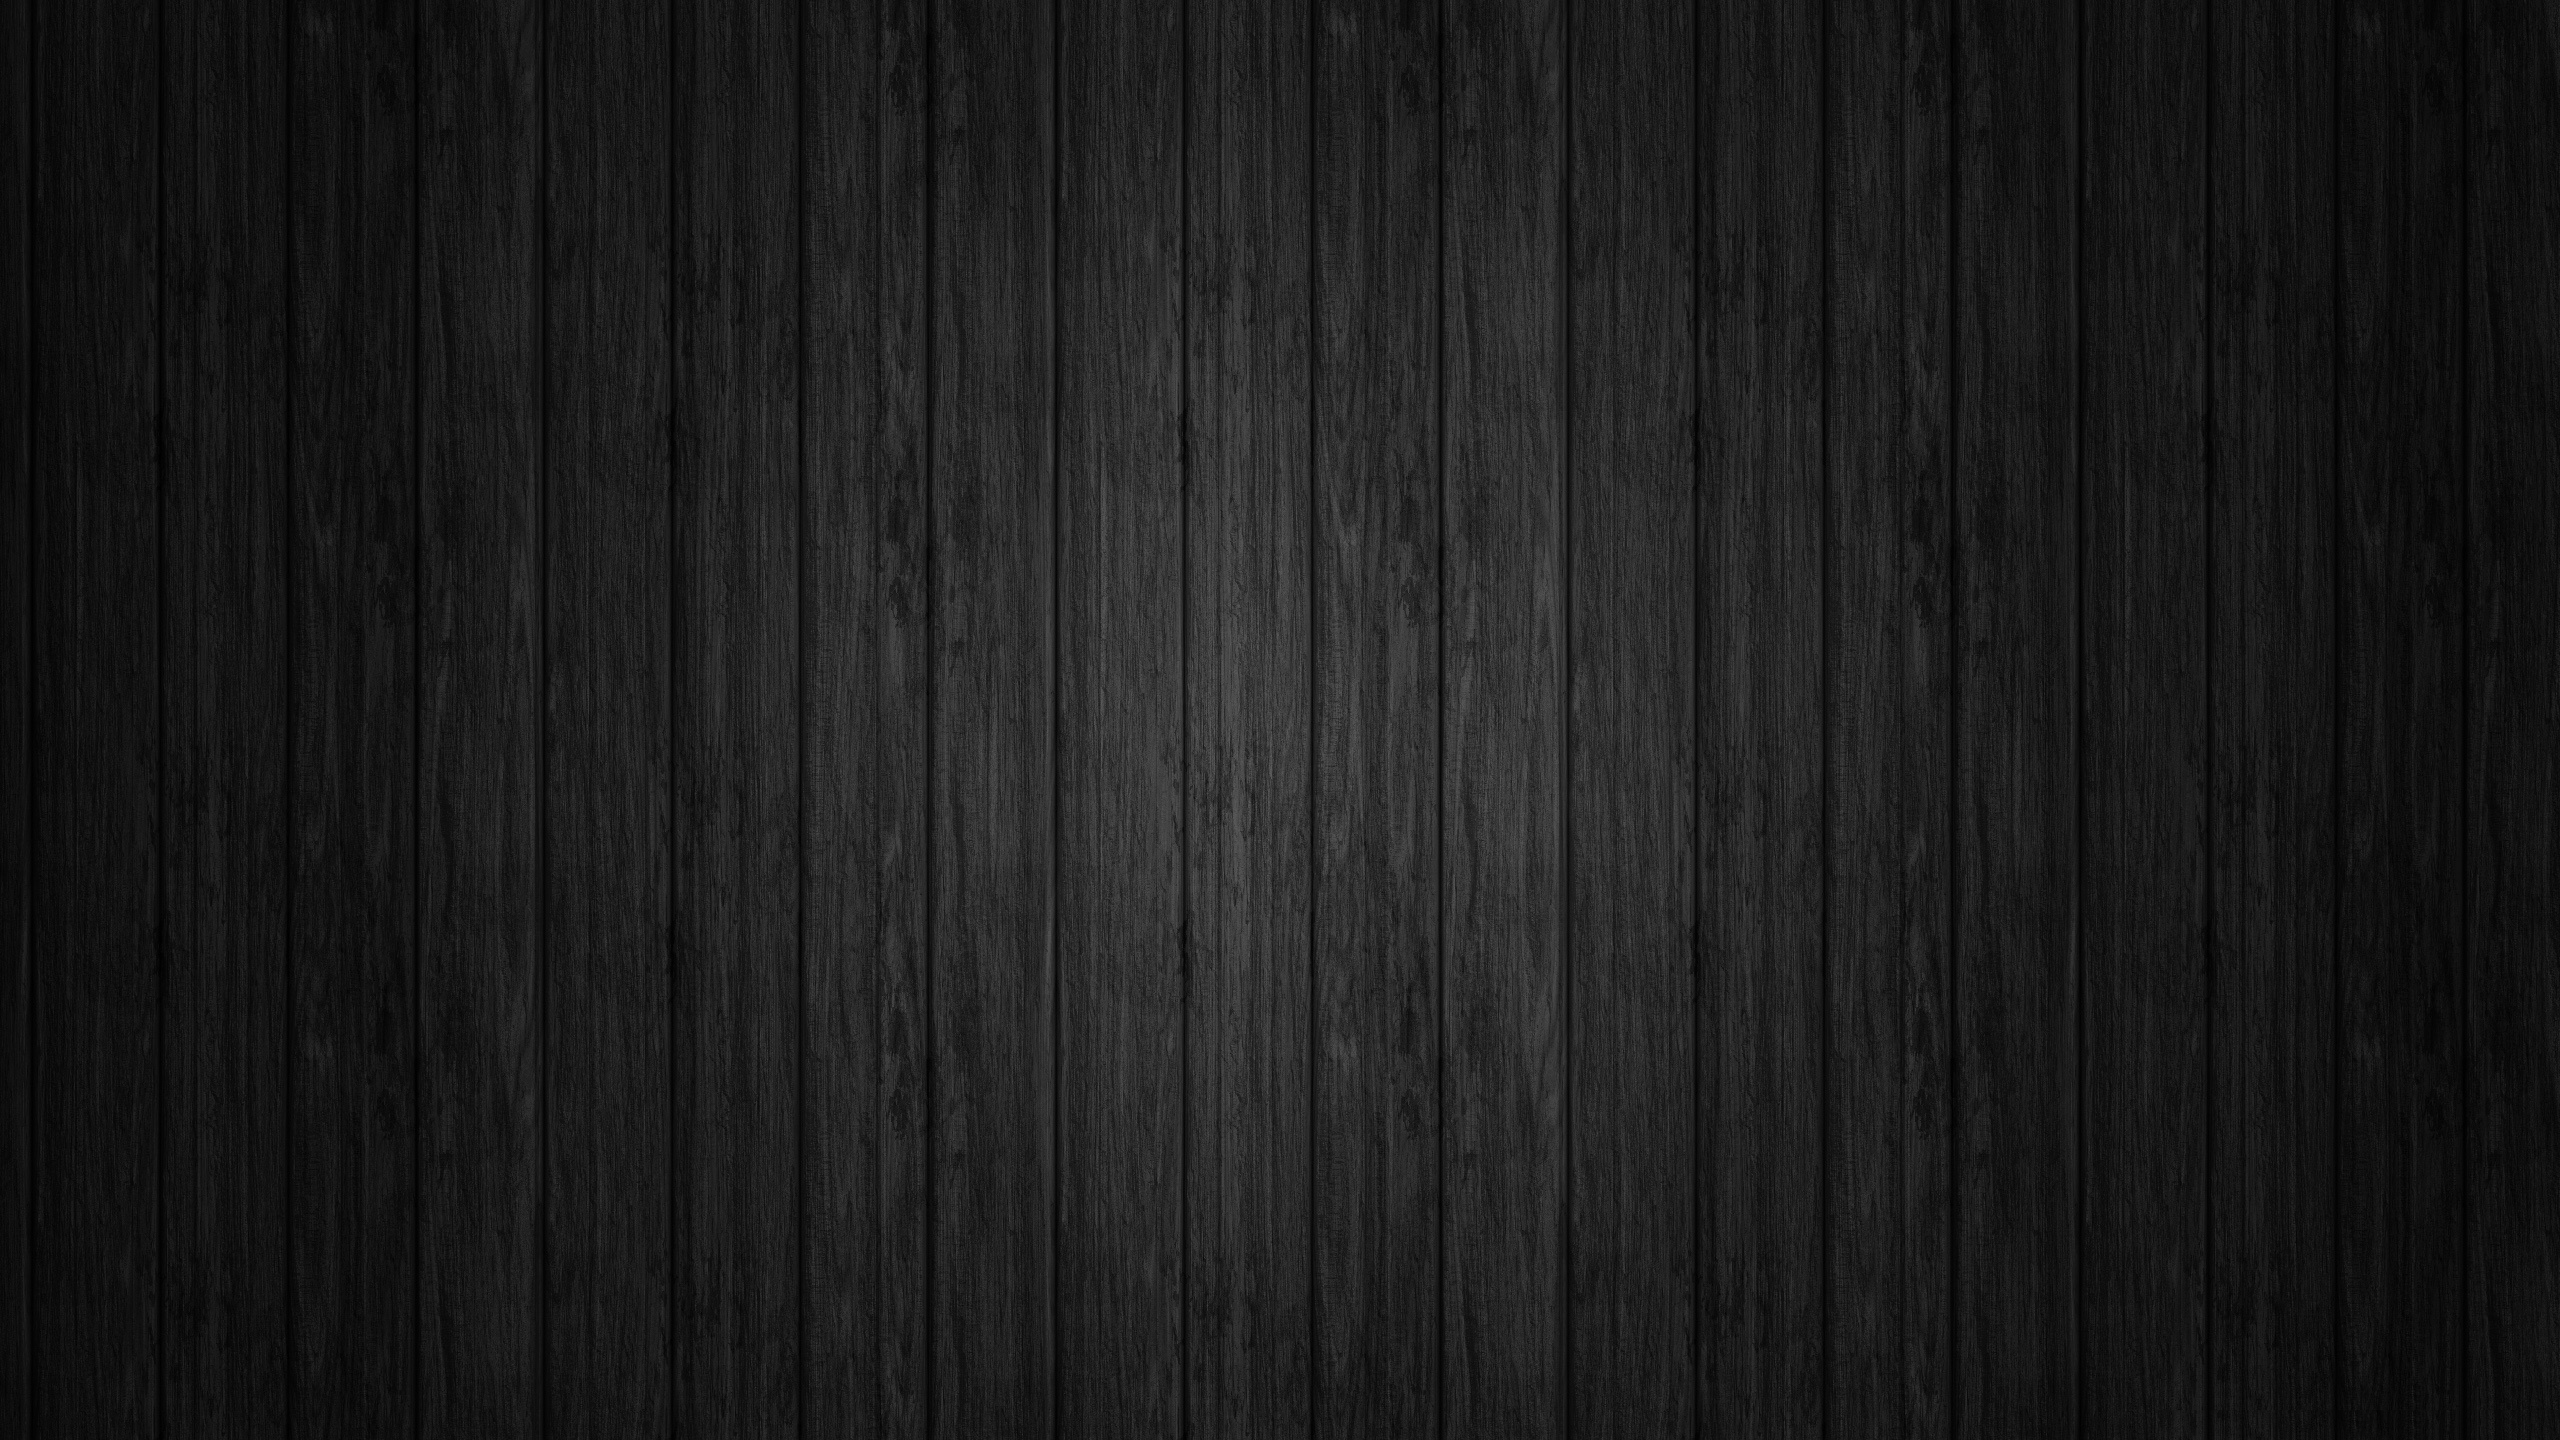 Hình nền đen gỗ tĩnh - Ảnh nền đen gỗ tĩnh là lựa chọn hoàn hảo cho những ai thích sự đơn giản và tối giản. Với màu sắc độc đáo như vậy, hình ảnh bạn chọn sẽ nổi bật hơn và giúp giảm stress cho mắt. Hãy cùng ngắm những tấm ảnh độc đáo với nền đen gỗ tĩnh này.